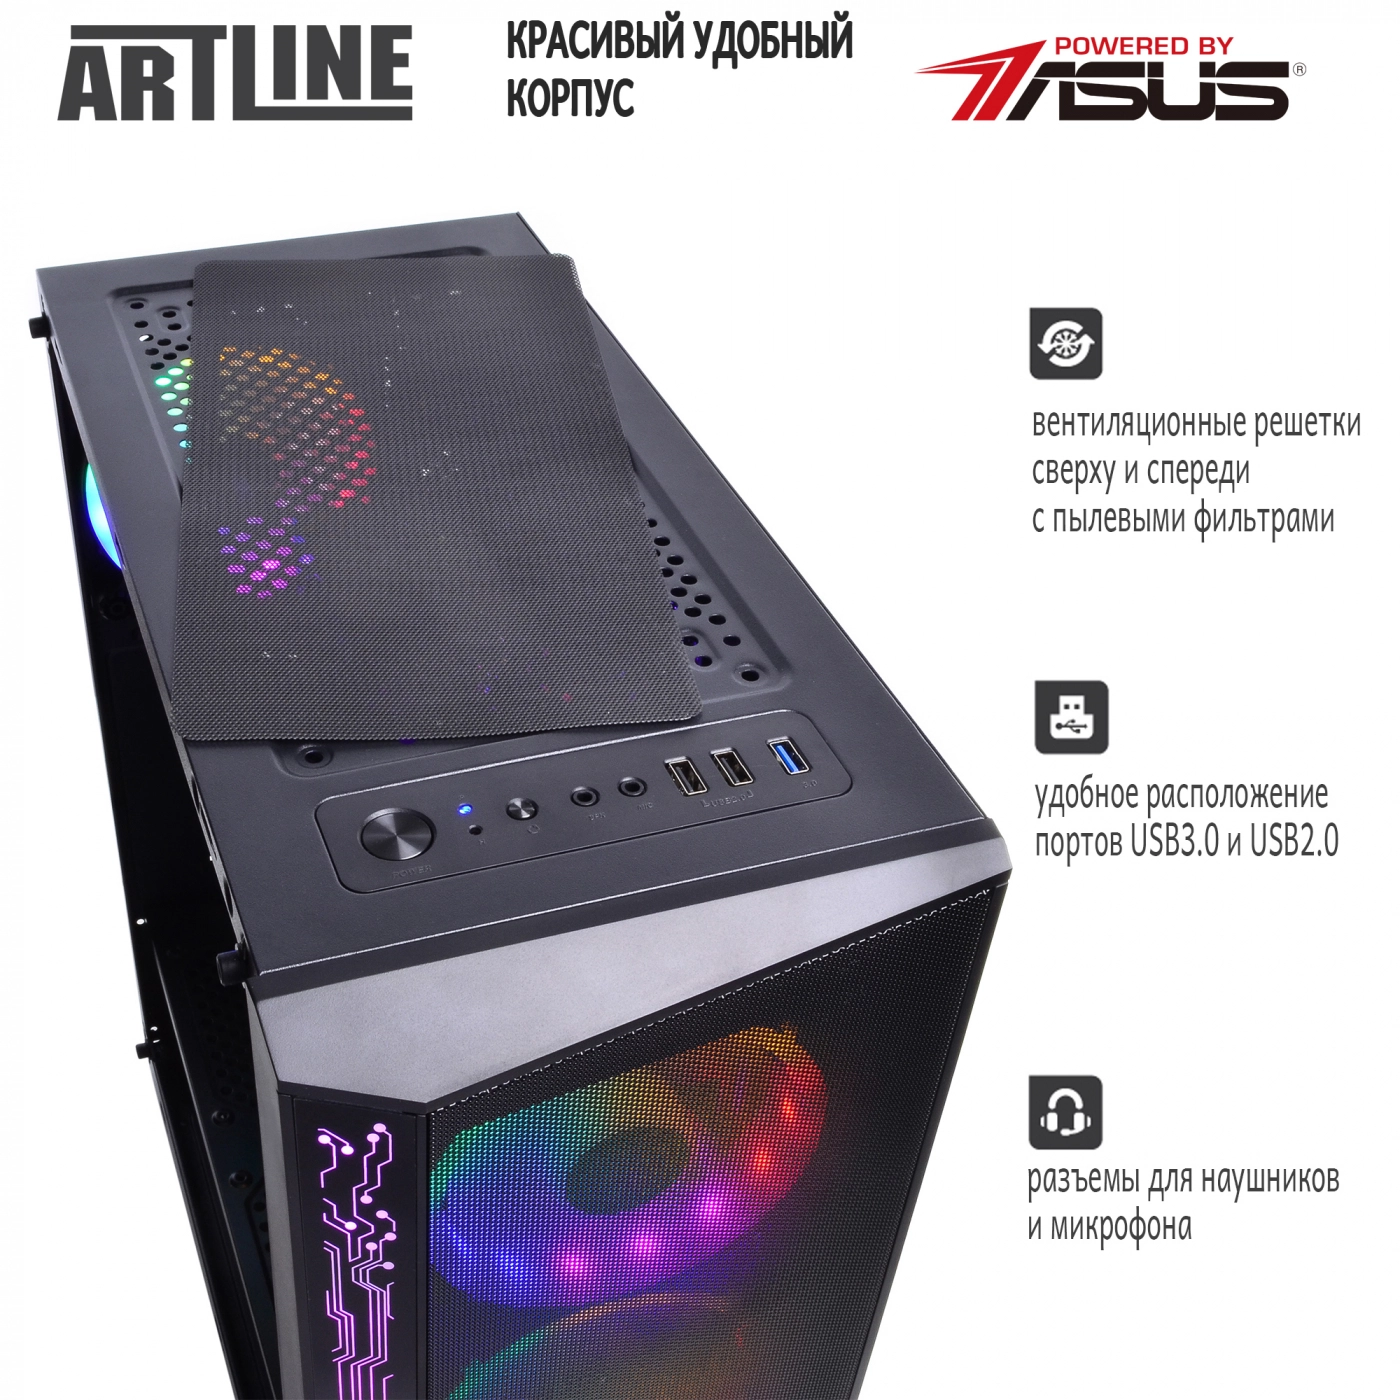 Купить Компьютер ARTLINE Gaming X68v05 - фото 4